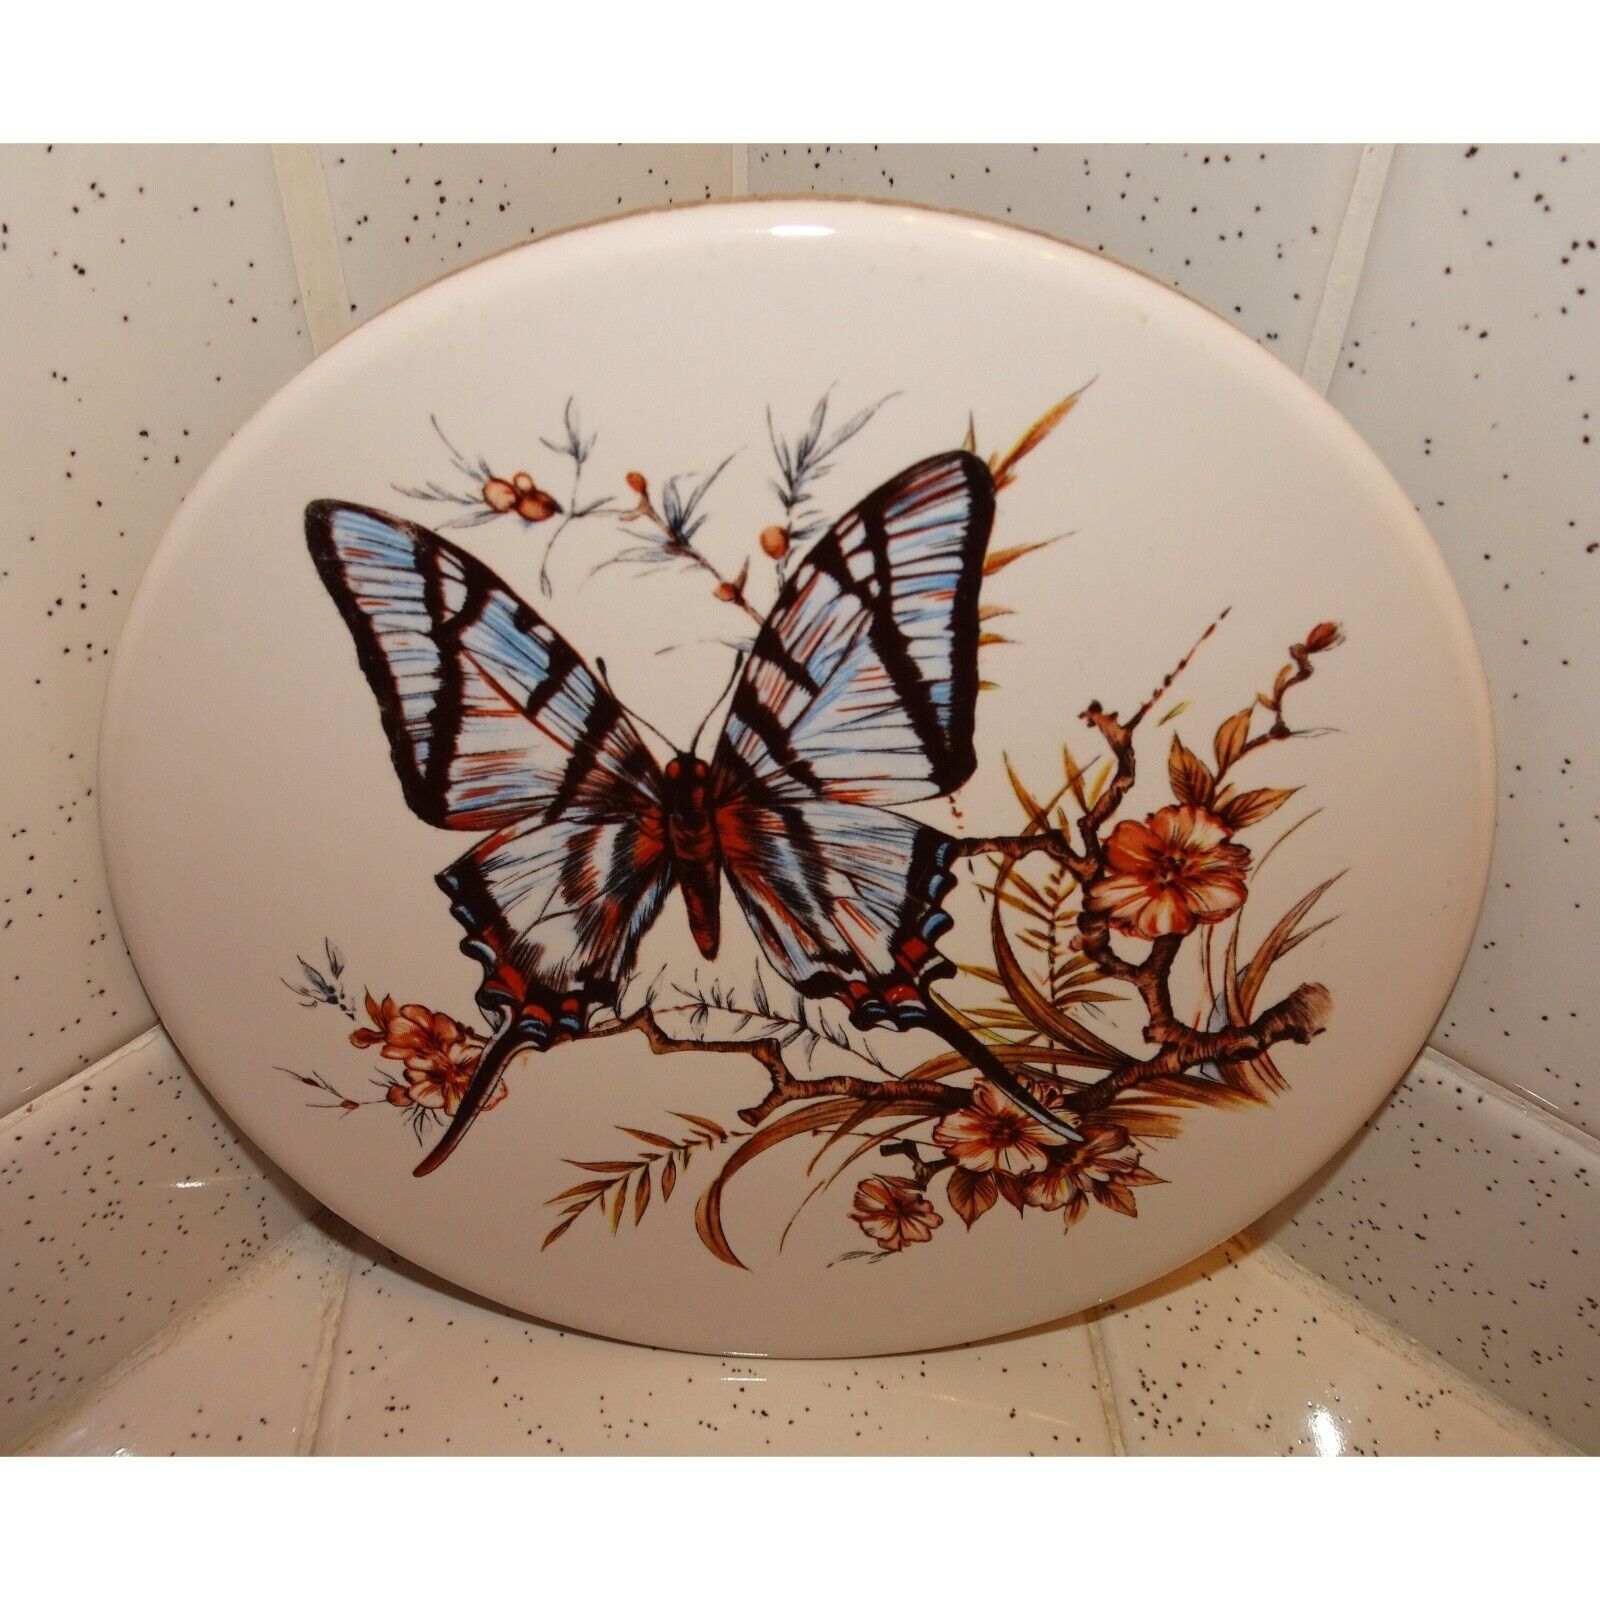 Vintage Round Butterfly & Flowers Ceramic Tile Trivet farmhouse decor retro